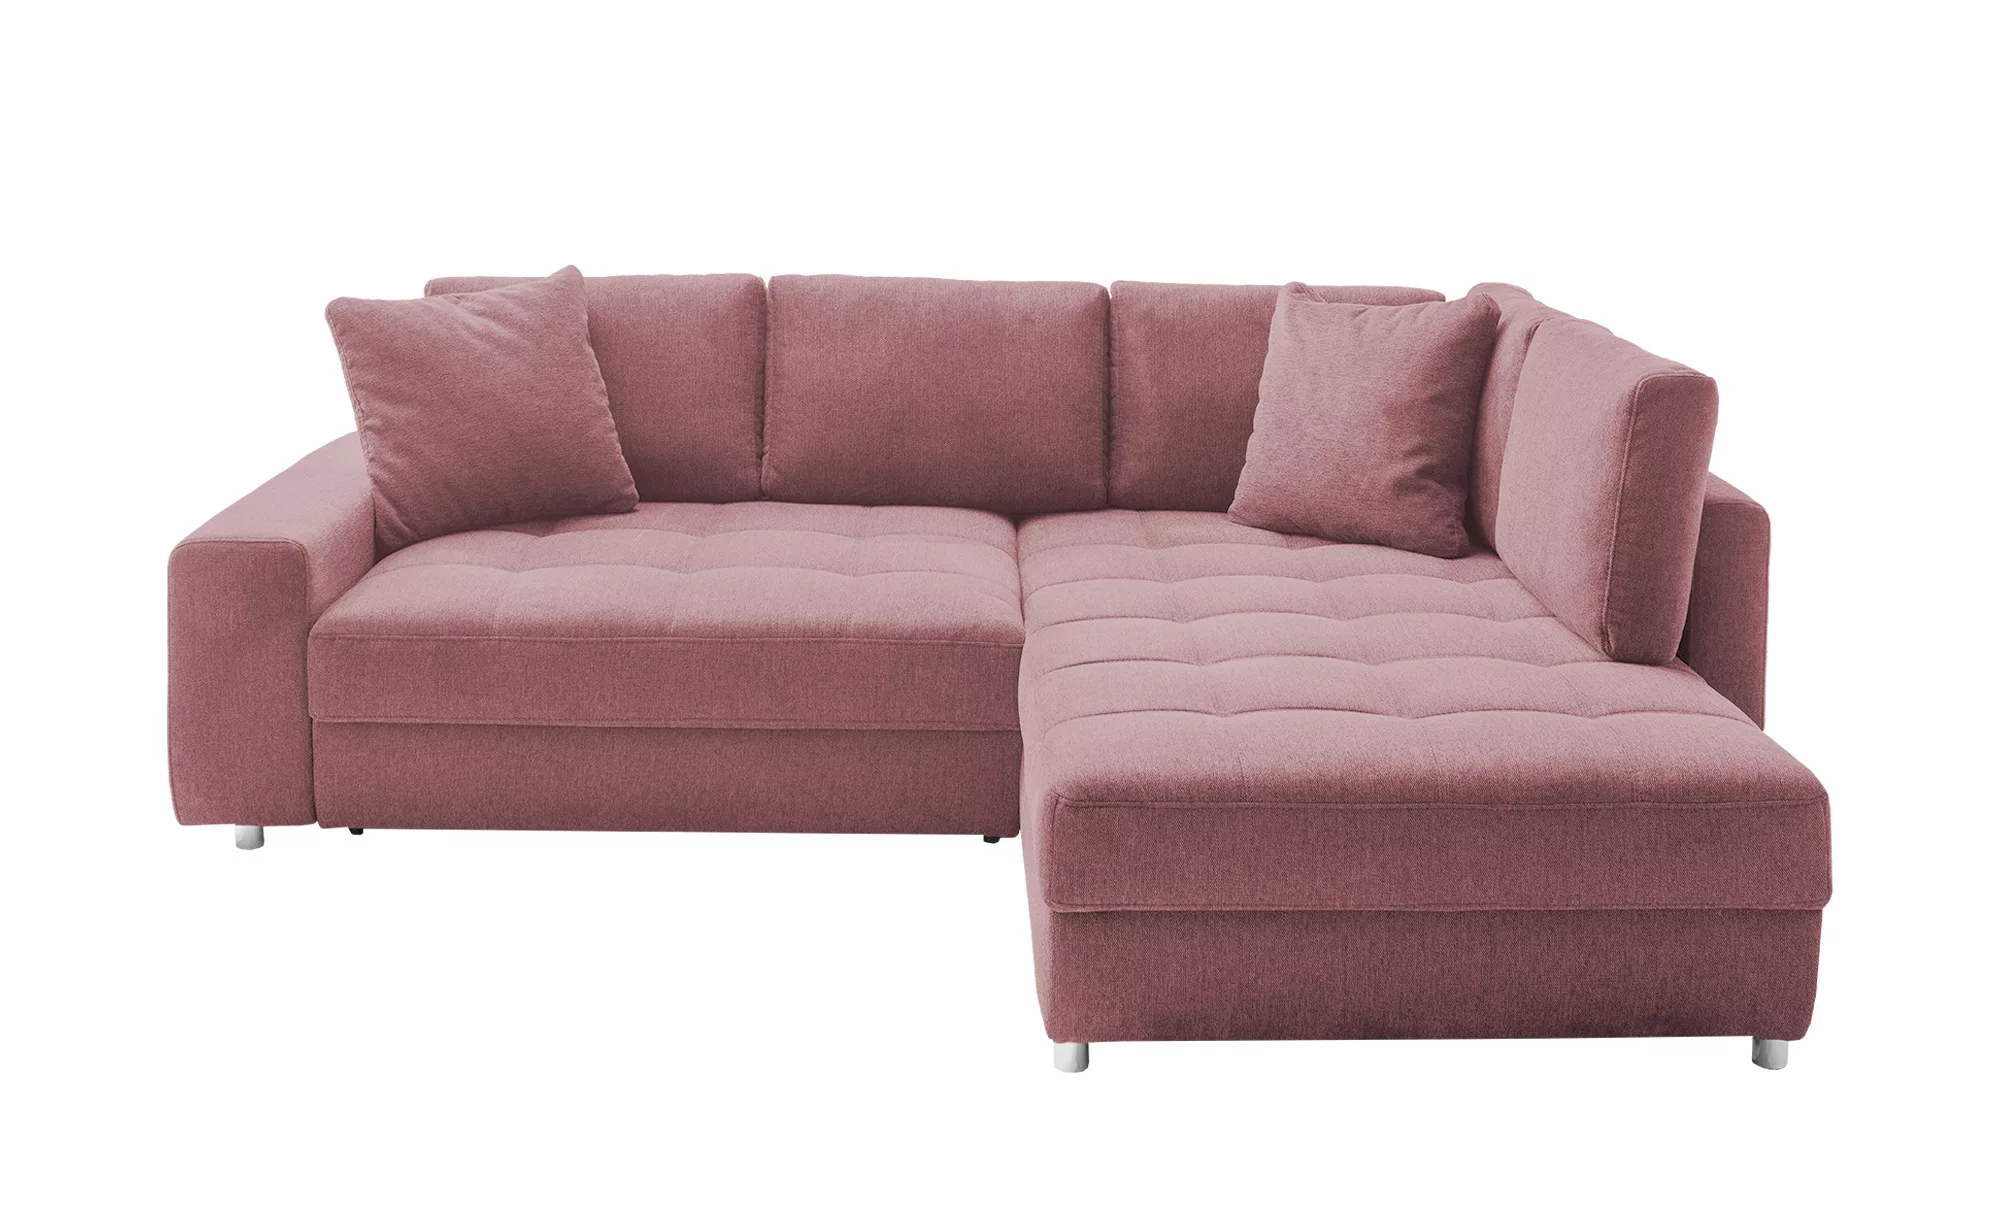 bobb Ecksofa - rosa/pink - 84 cm - Polstermöbel > Sofas > Ecksofas - Möbel günstig online kaufen